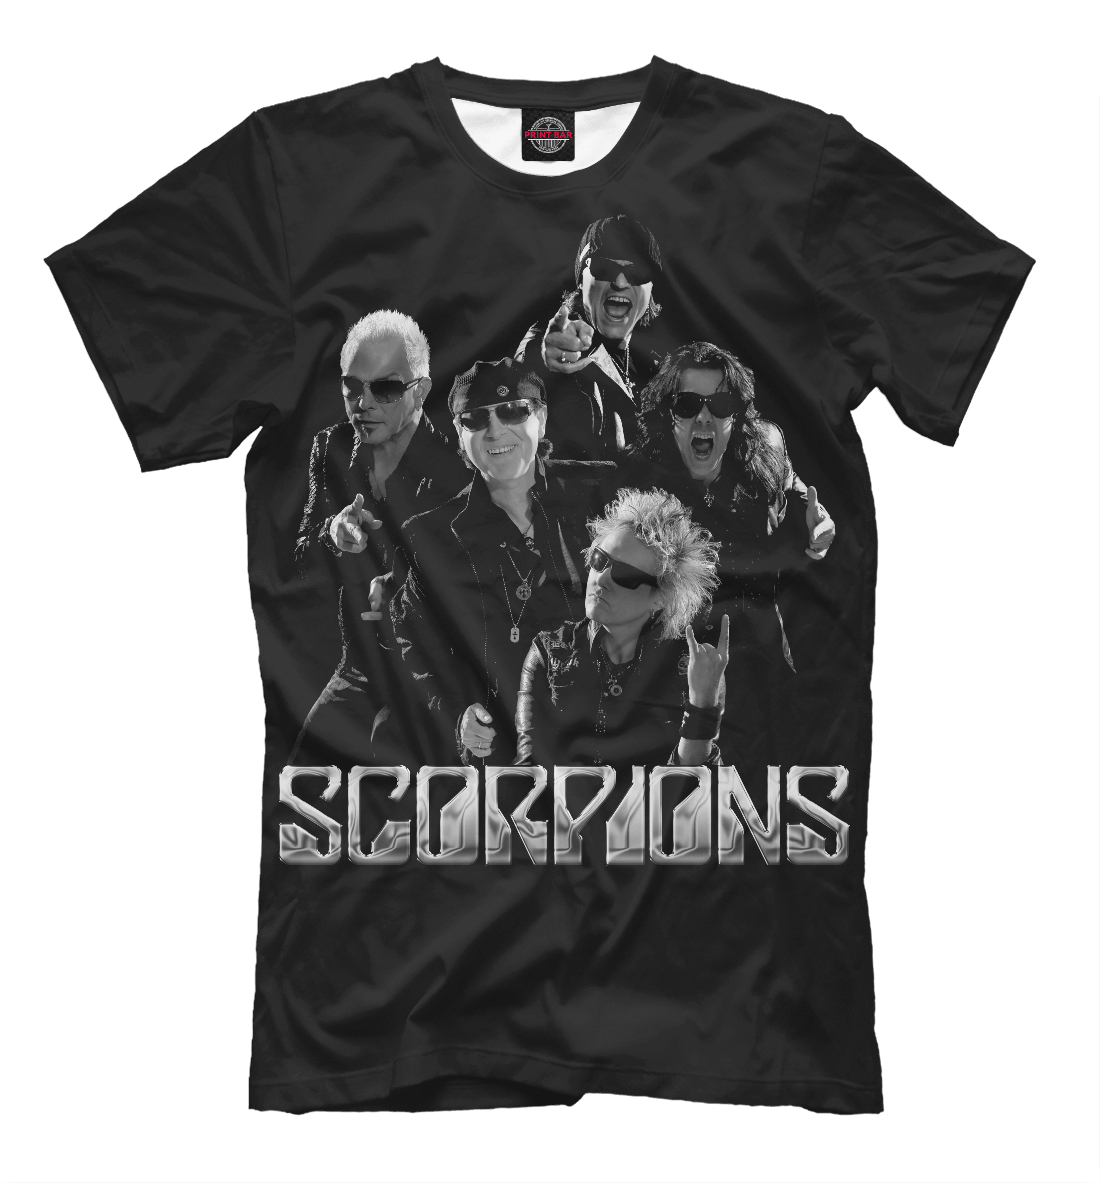 

Scorpions